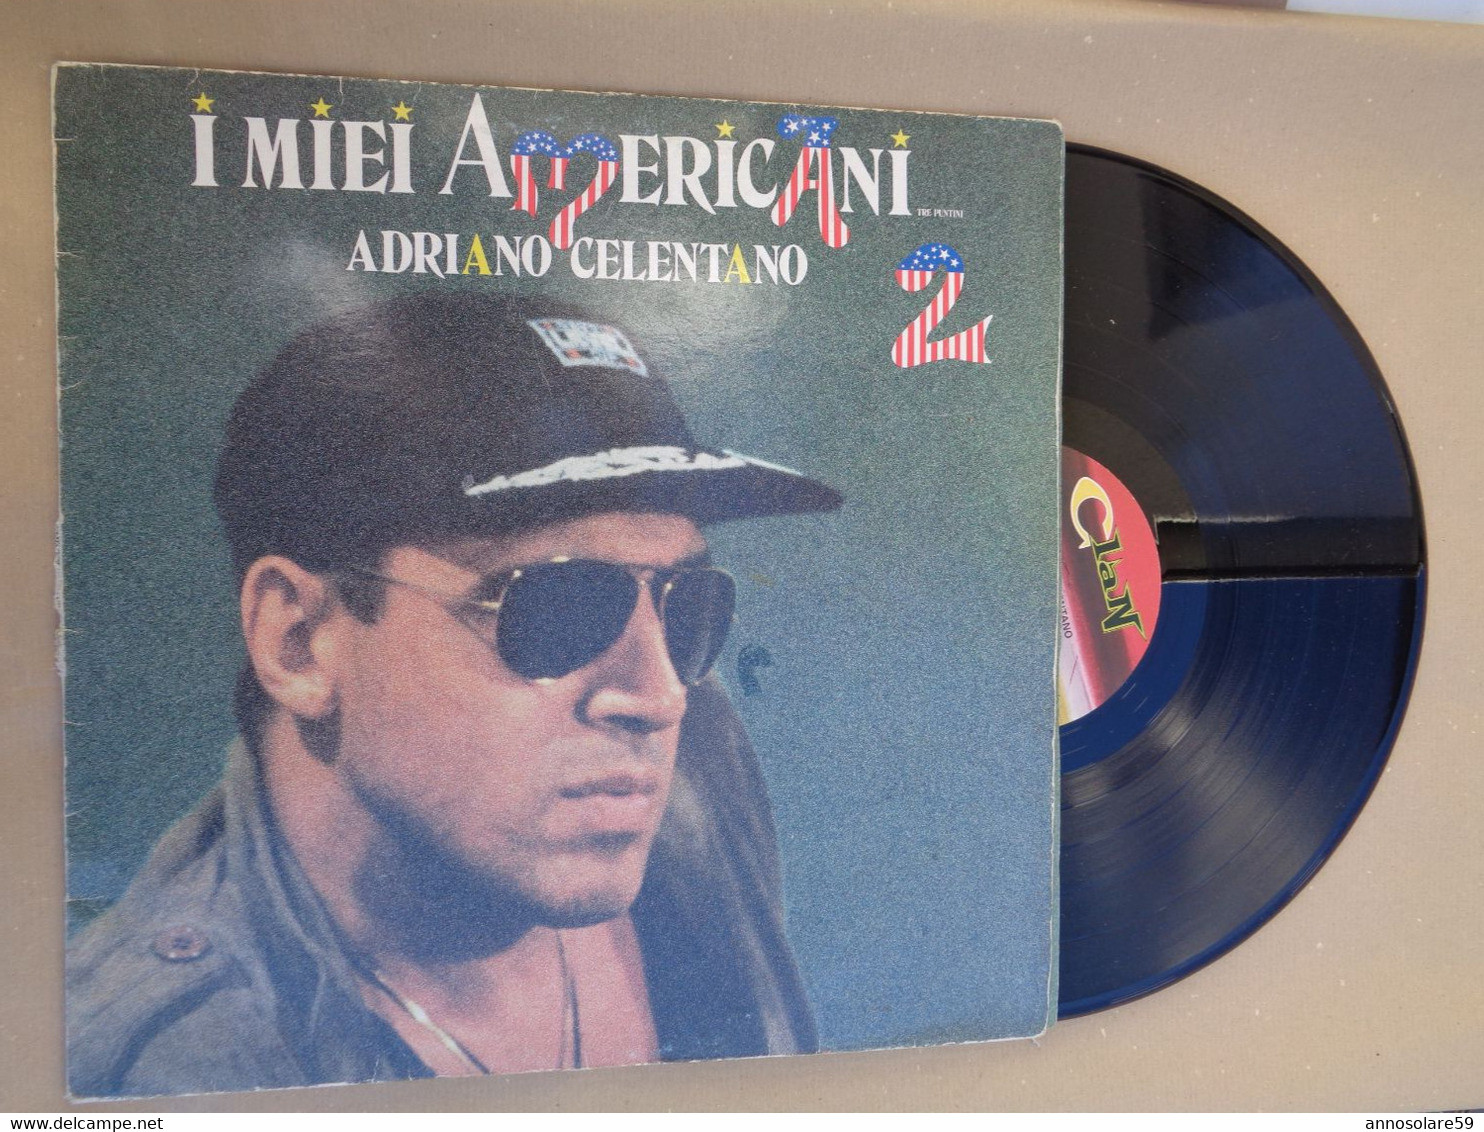 DISCO 33 GIRI LP "ADRIANO CELENTANO" I MIEI AMERICANI - LEGGI - Autres - Musique Italienne